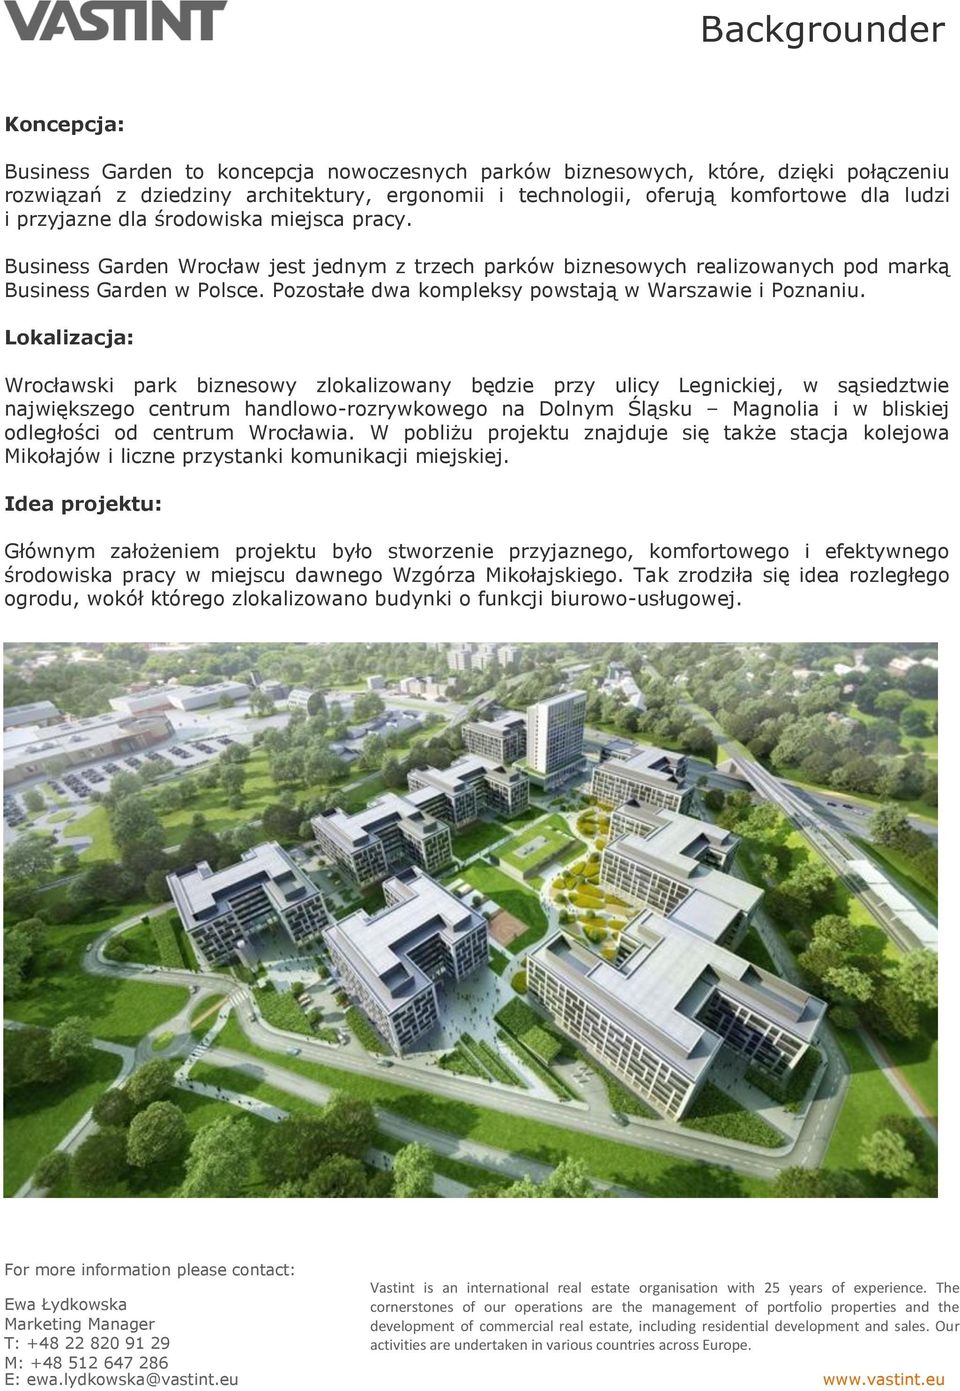 Lokalizacja: Wrocławski park biznesowy zlokalizowany będzie przy ulicy Legnickiej, w sąsiedztwie największego centrum handlowo-rozrywkowego na Dolnym Śląsku Magnolia i w bliskiej odległości od